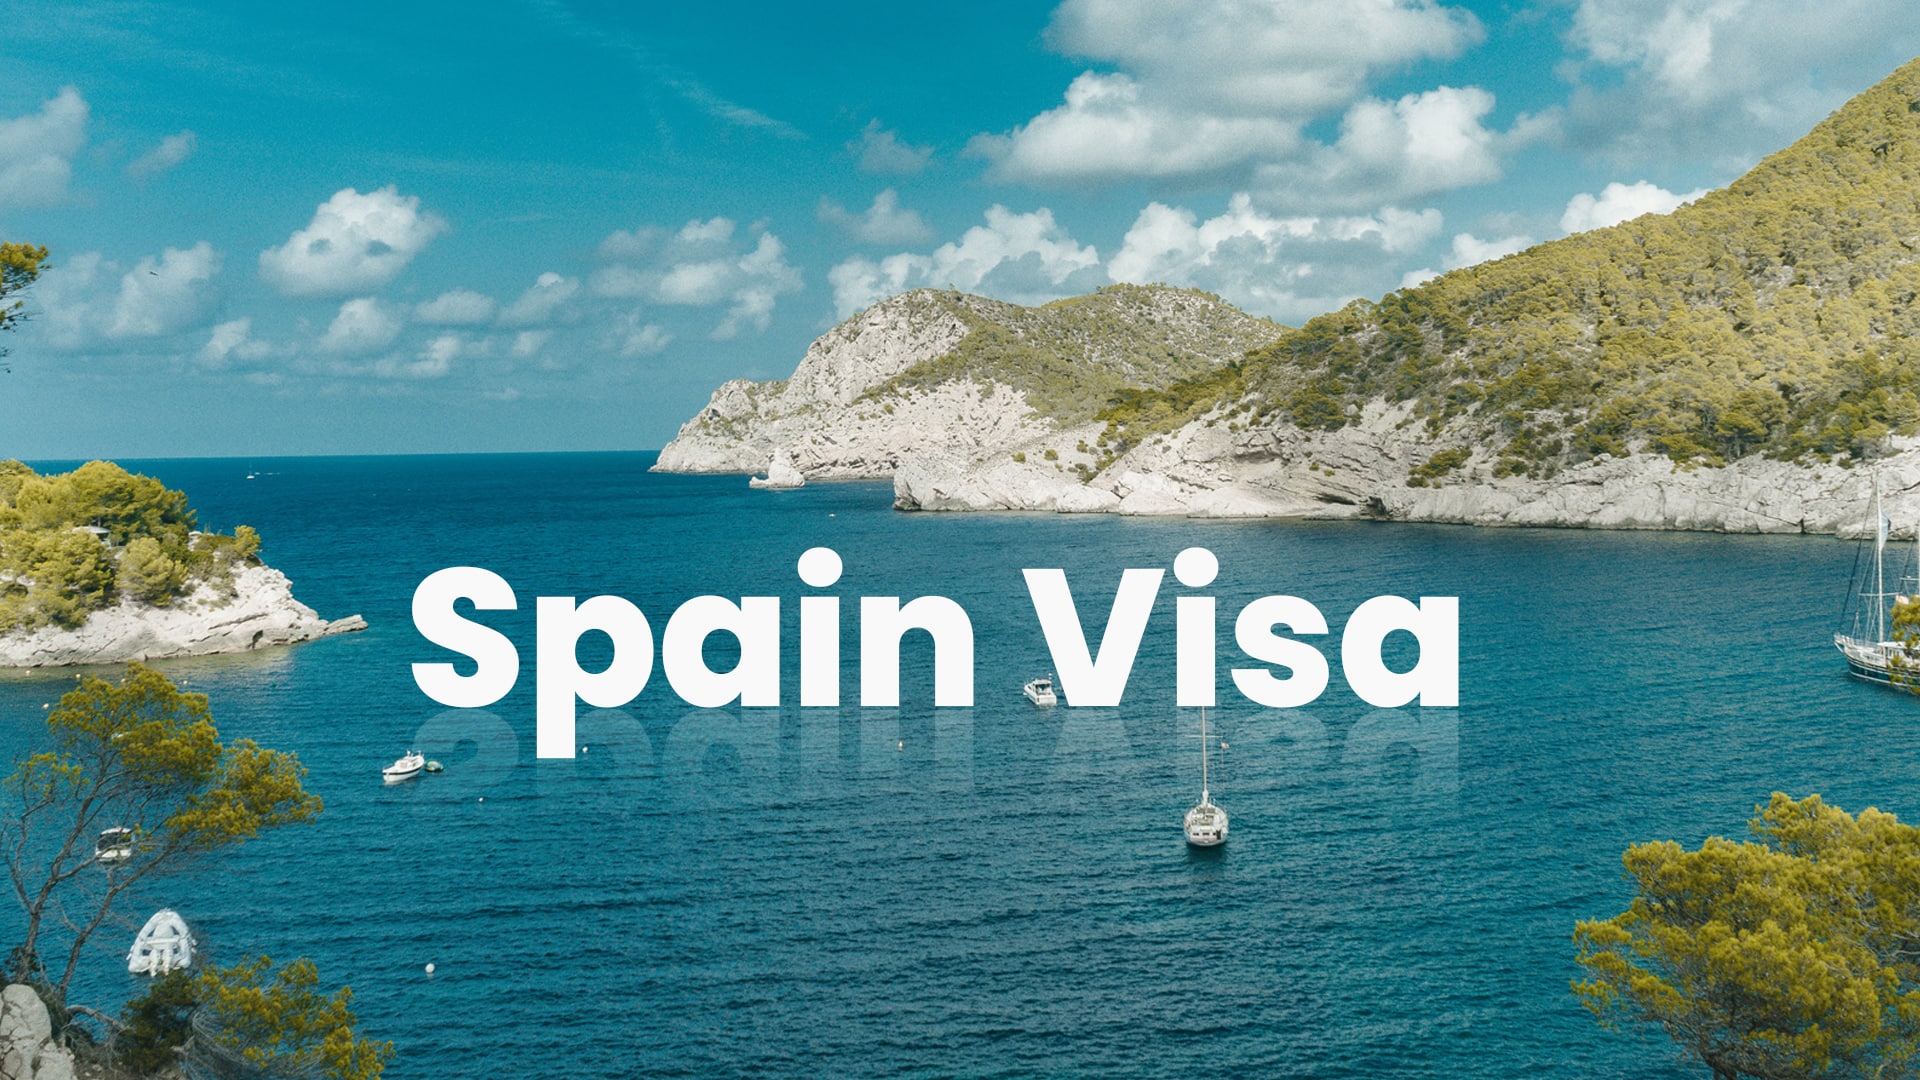 Spain Visa from Dubai UAE